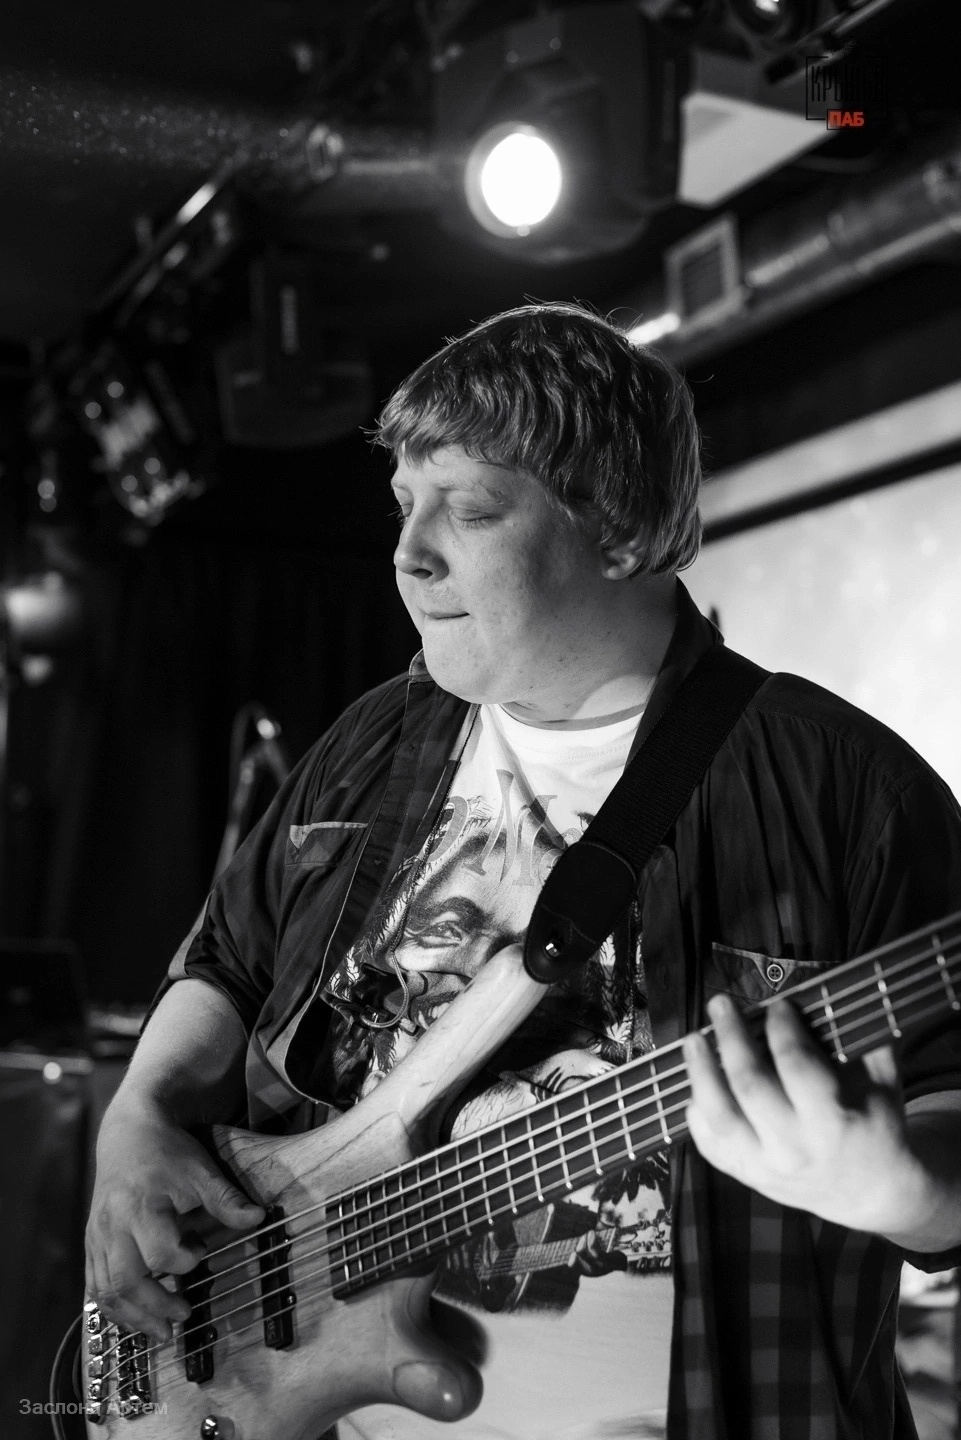 Басист кировской кавер-группы умер во время репетиции на руках у друзей